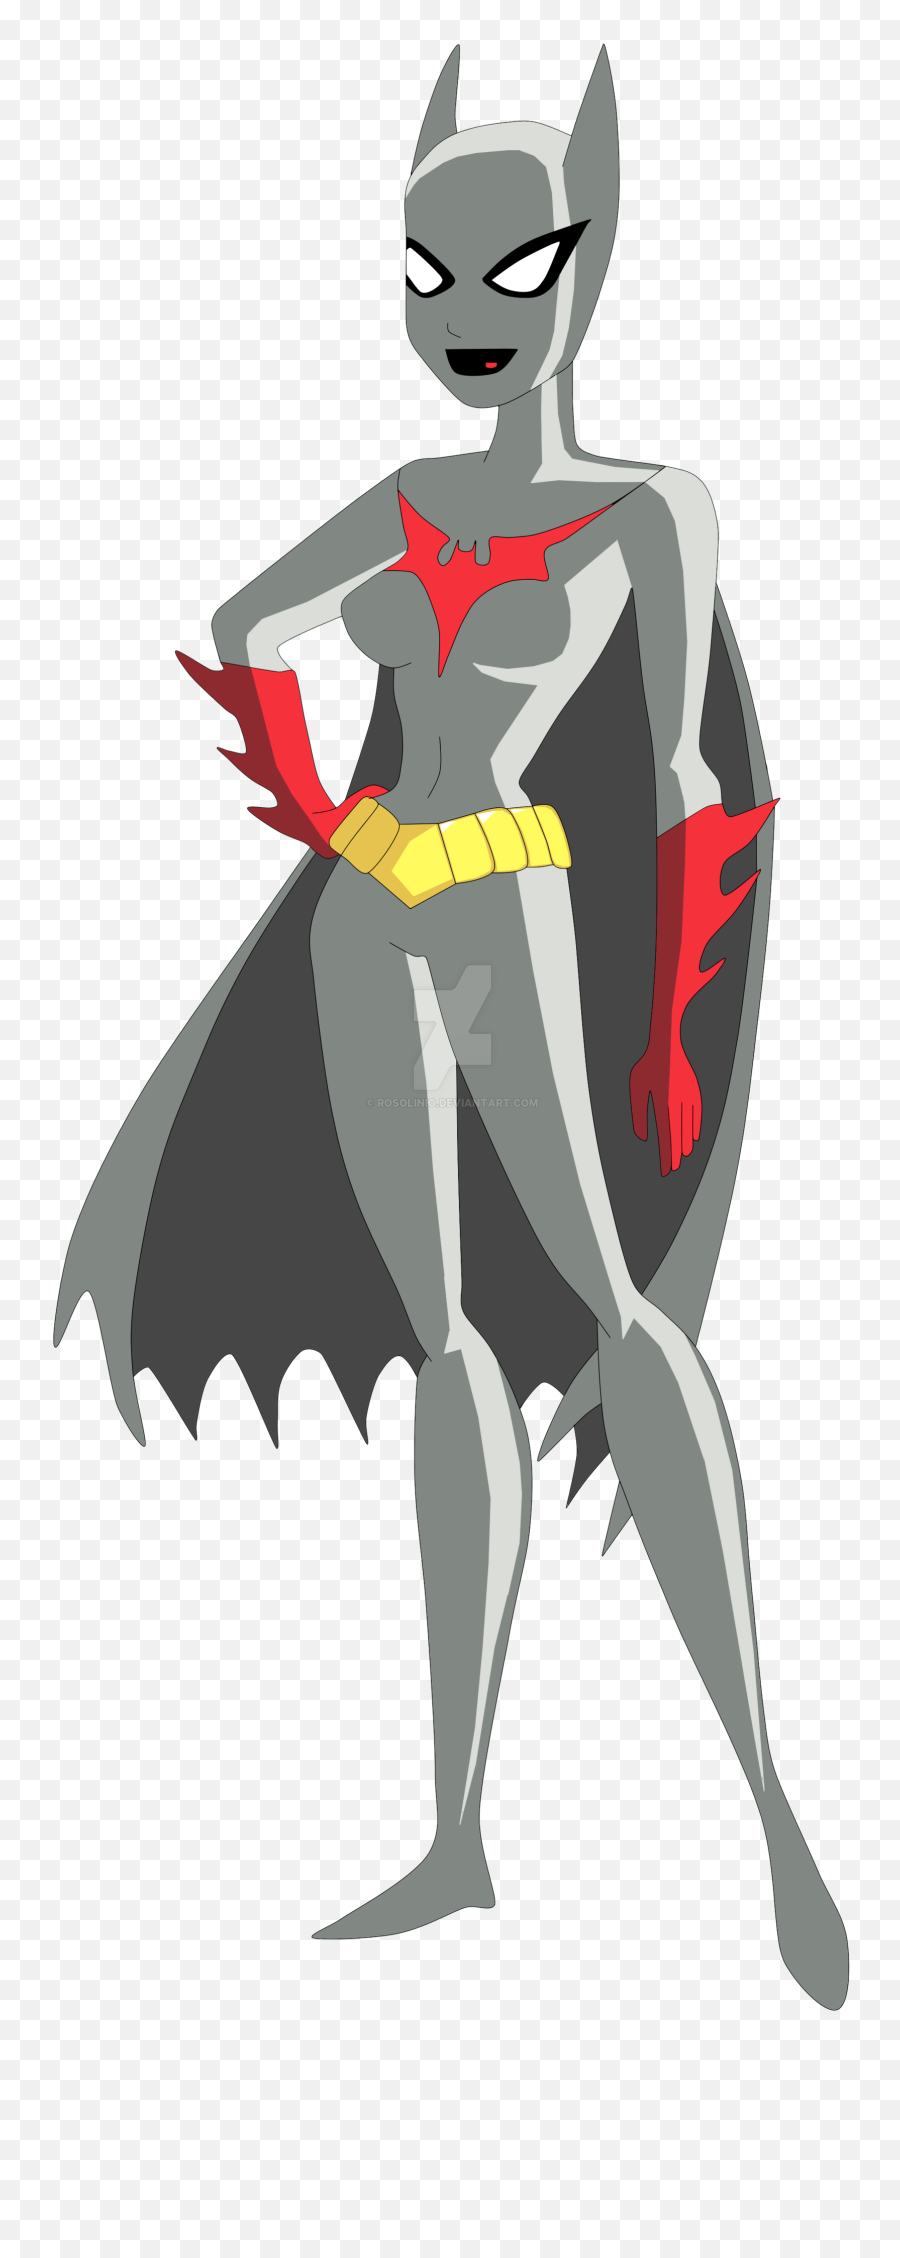 Batwoman Png - Batwoman Batman Wonder Woman Fictional Batman Mystery Of The Batwoman Batwoman,Batwomen Logo